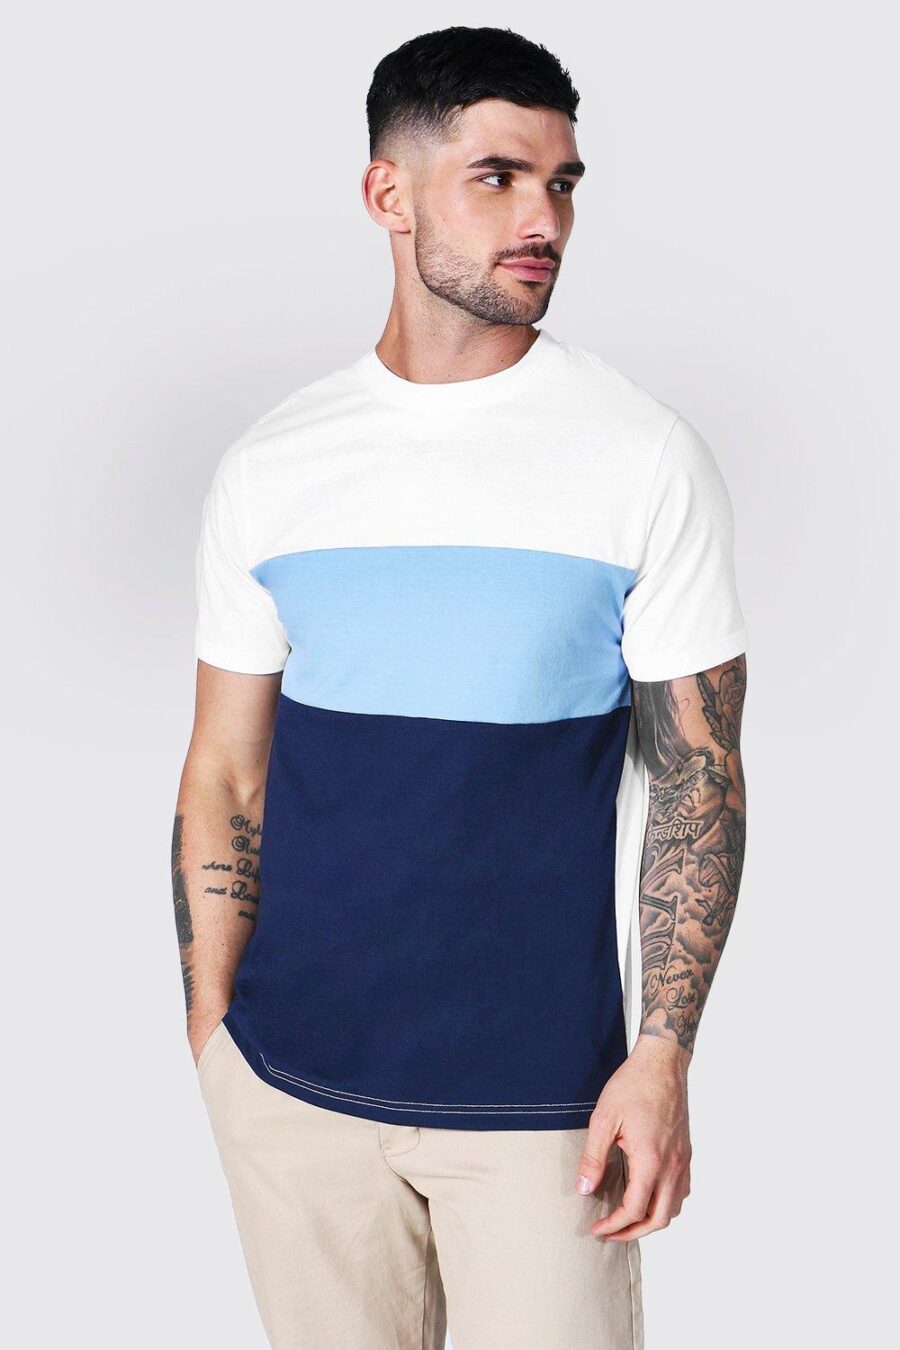 Boohooman-bloki-kolorow-t-shirt-bialy-niebieski-granatowy-XL